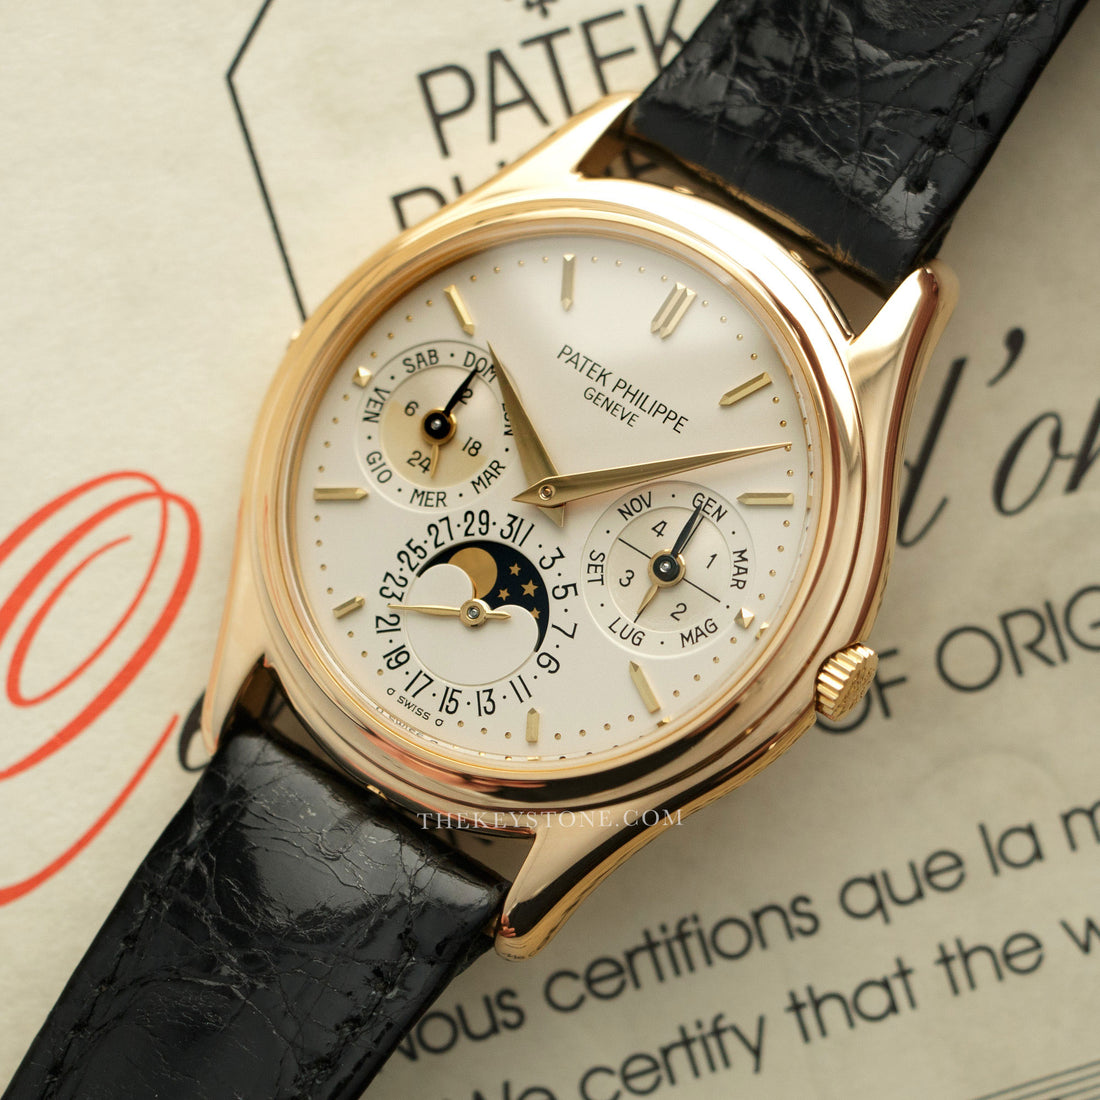 Patek Philippe Perpetual Calendar Automatic Watch Ref. 3940